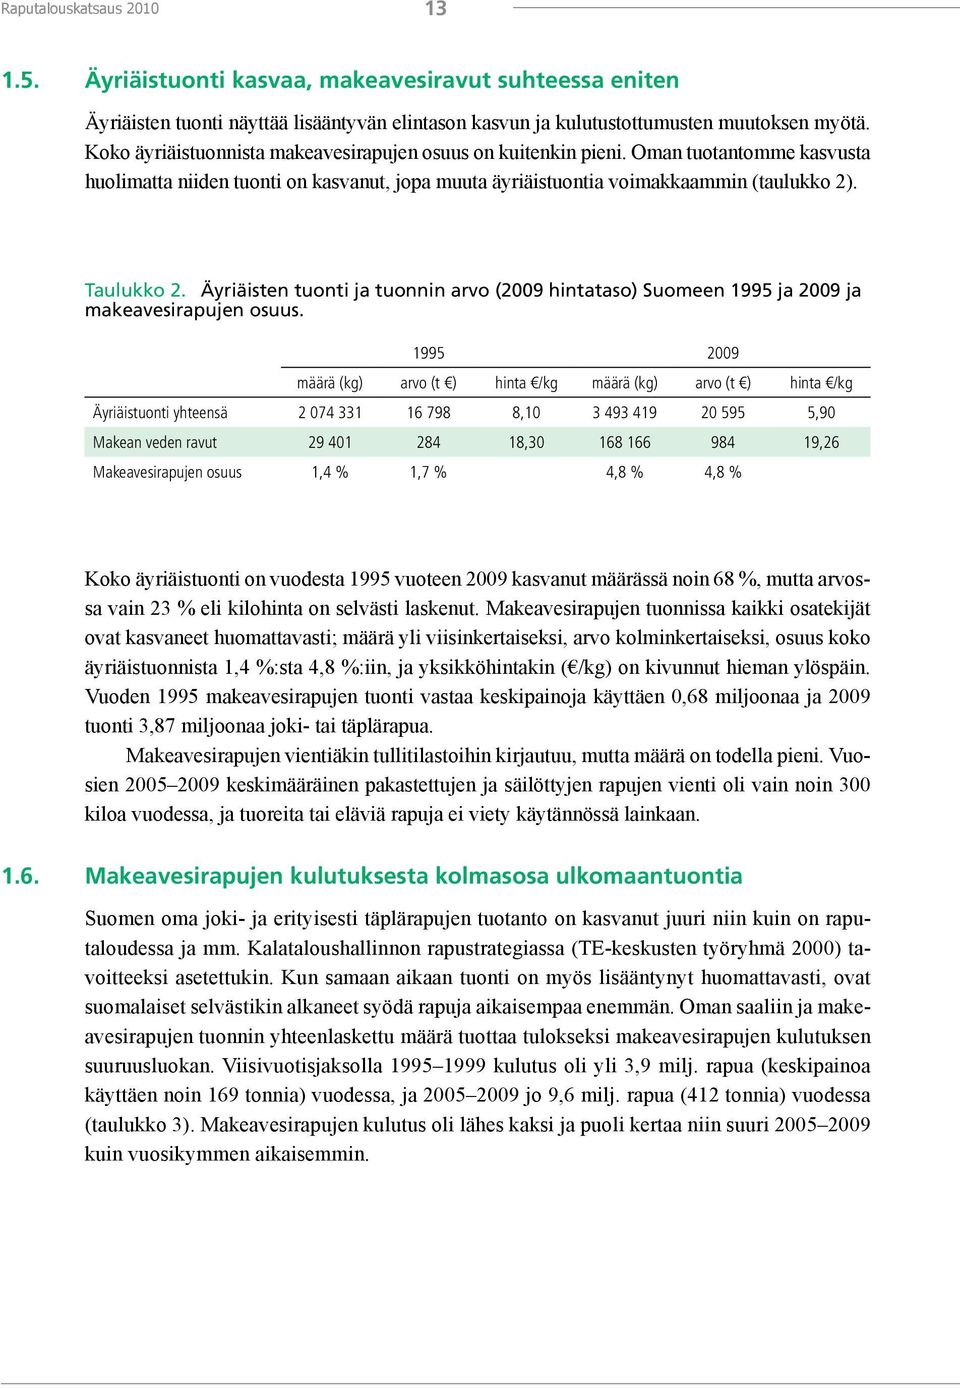 Äyriäisten tuonti ja tuonnin arvo (2009 hintataso) Suomeen 1995 ja 2009 ja makeavesirapujen osuus.